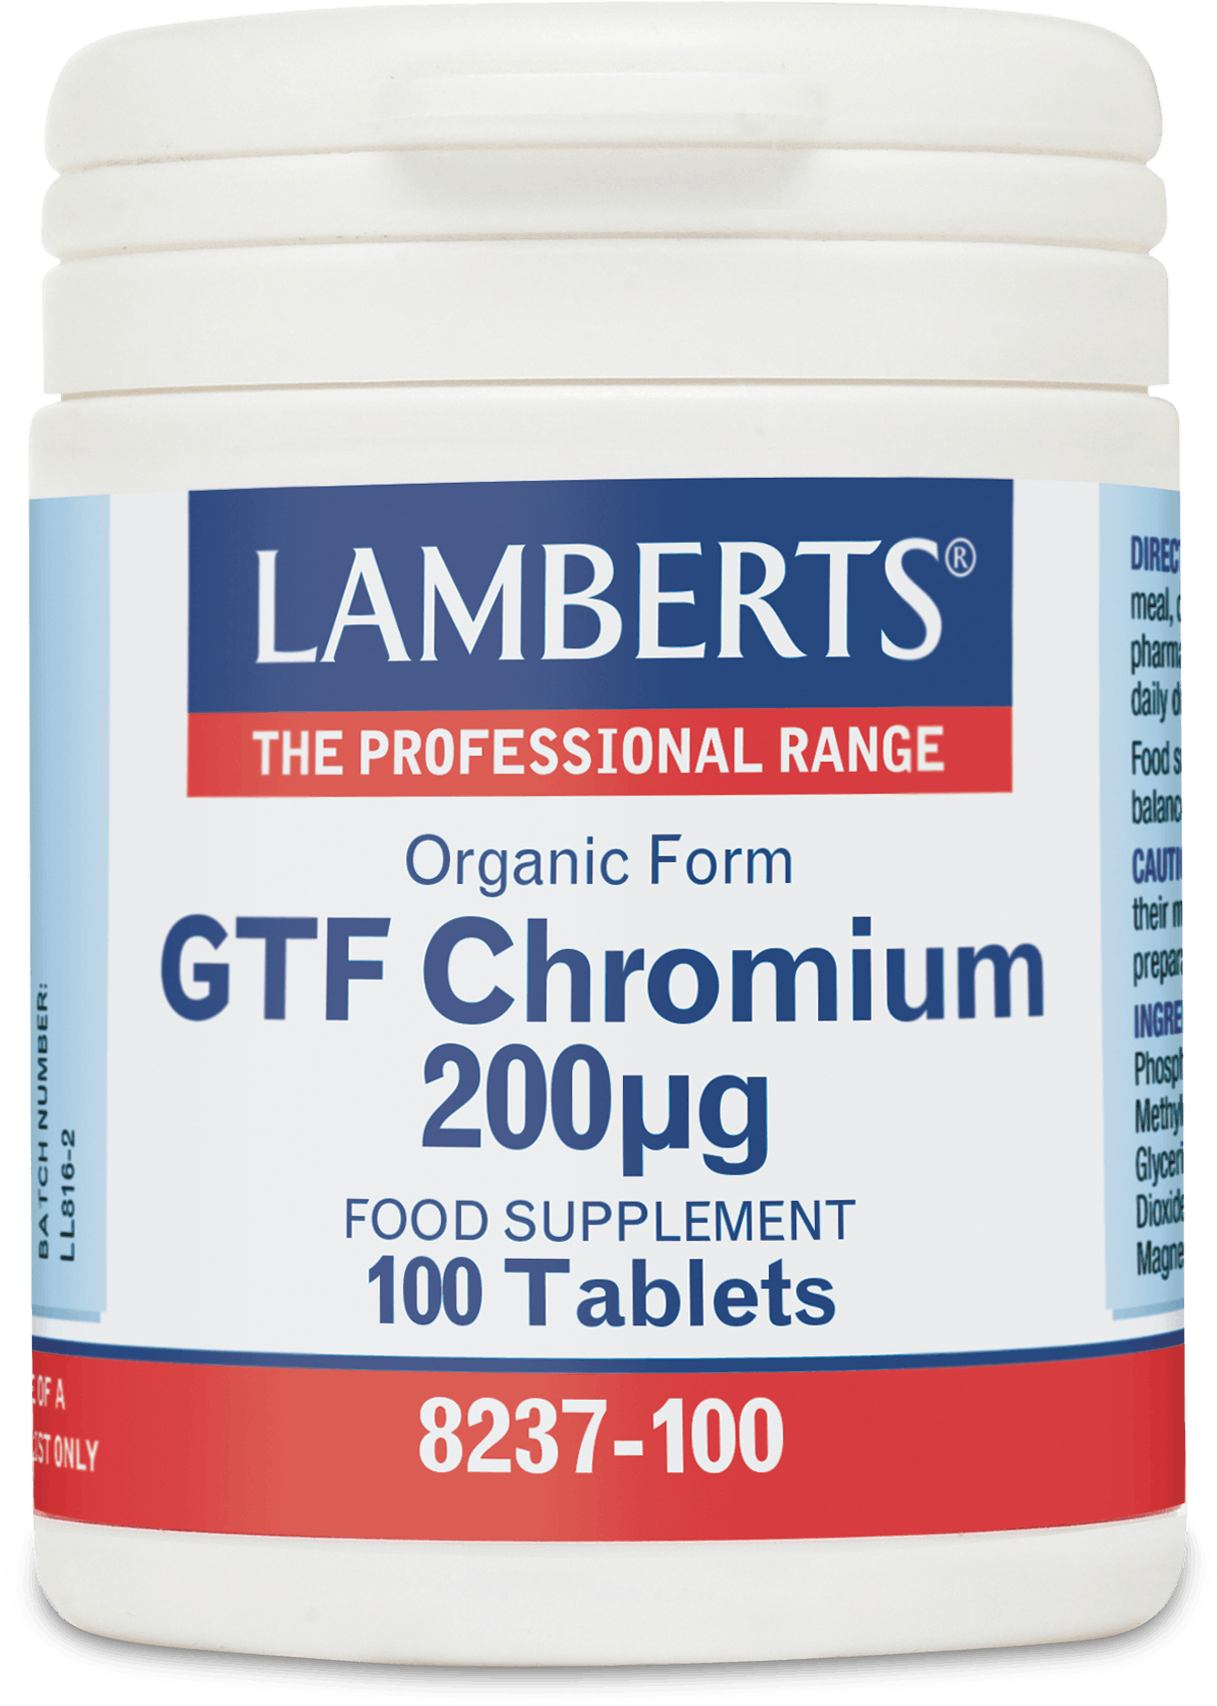 gtf chromium weight loss forum